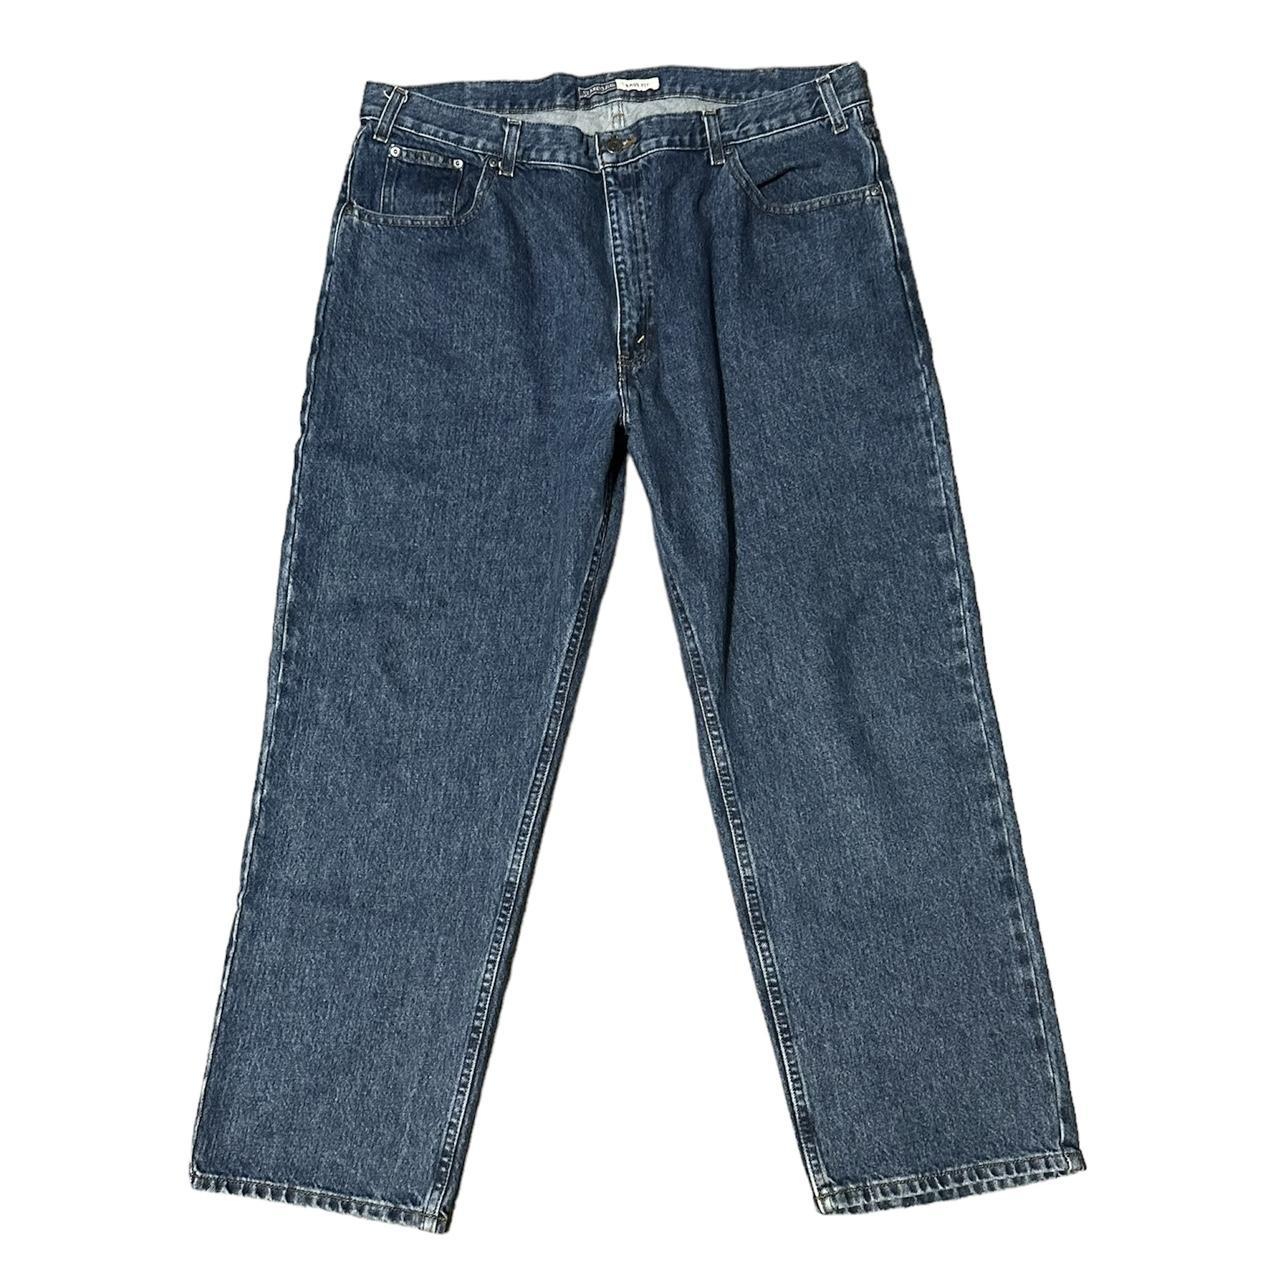 baggy jeans || skater boy/girl - size 40/29 - in... - Depop